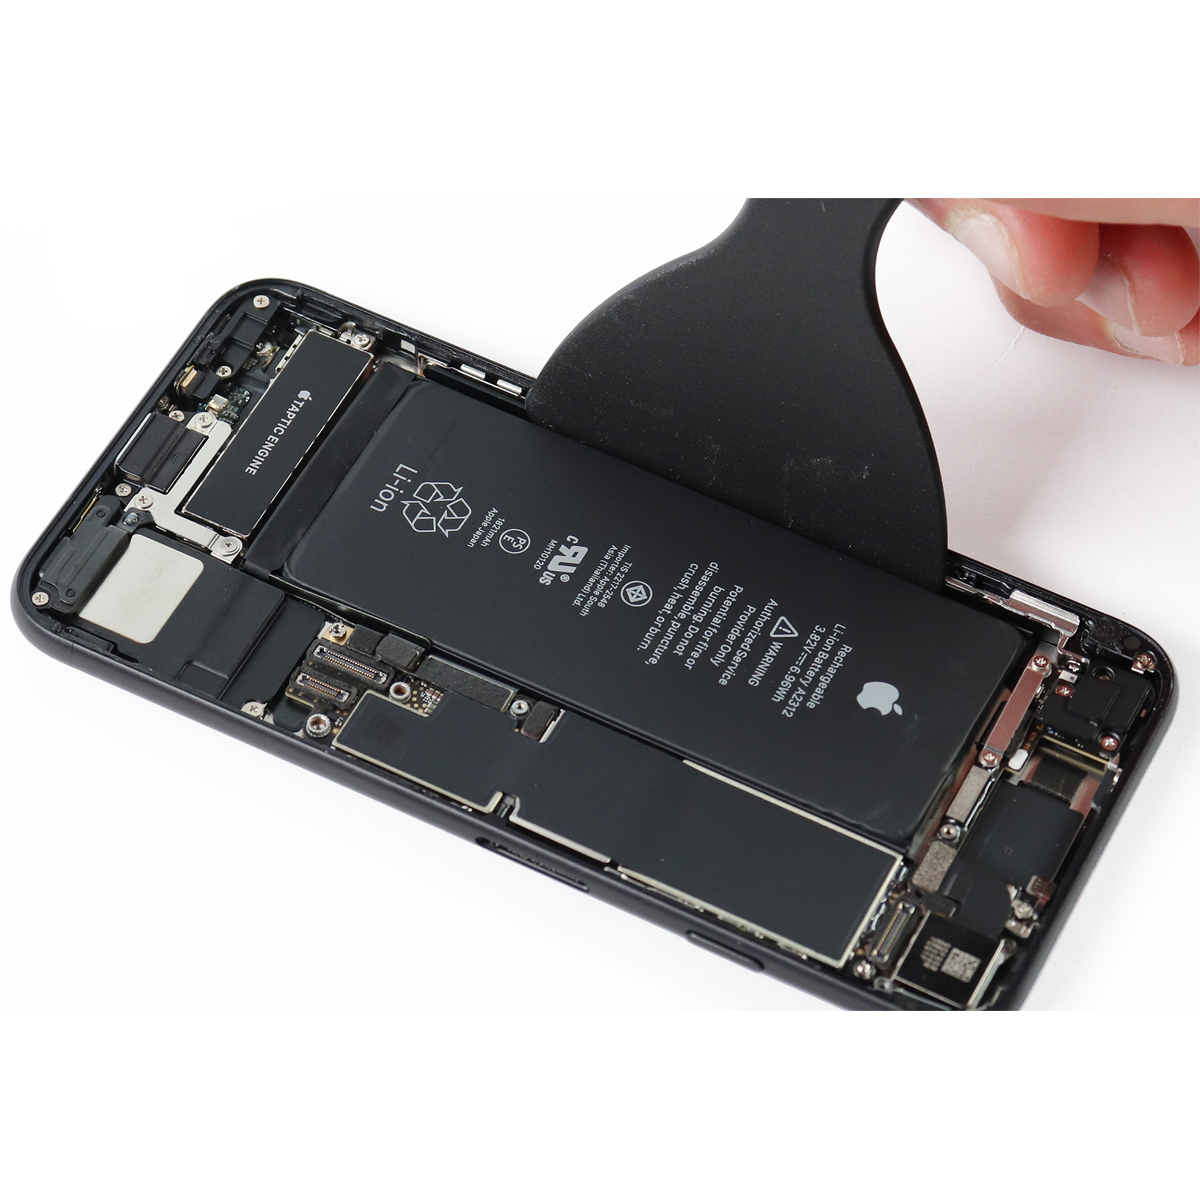 ✓ Cambio Bateria iPhone 8, iPhone SE 2020